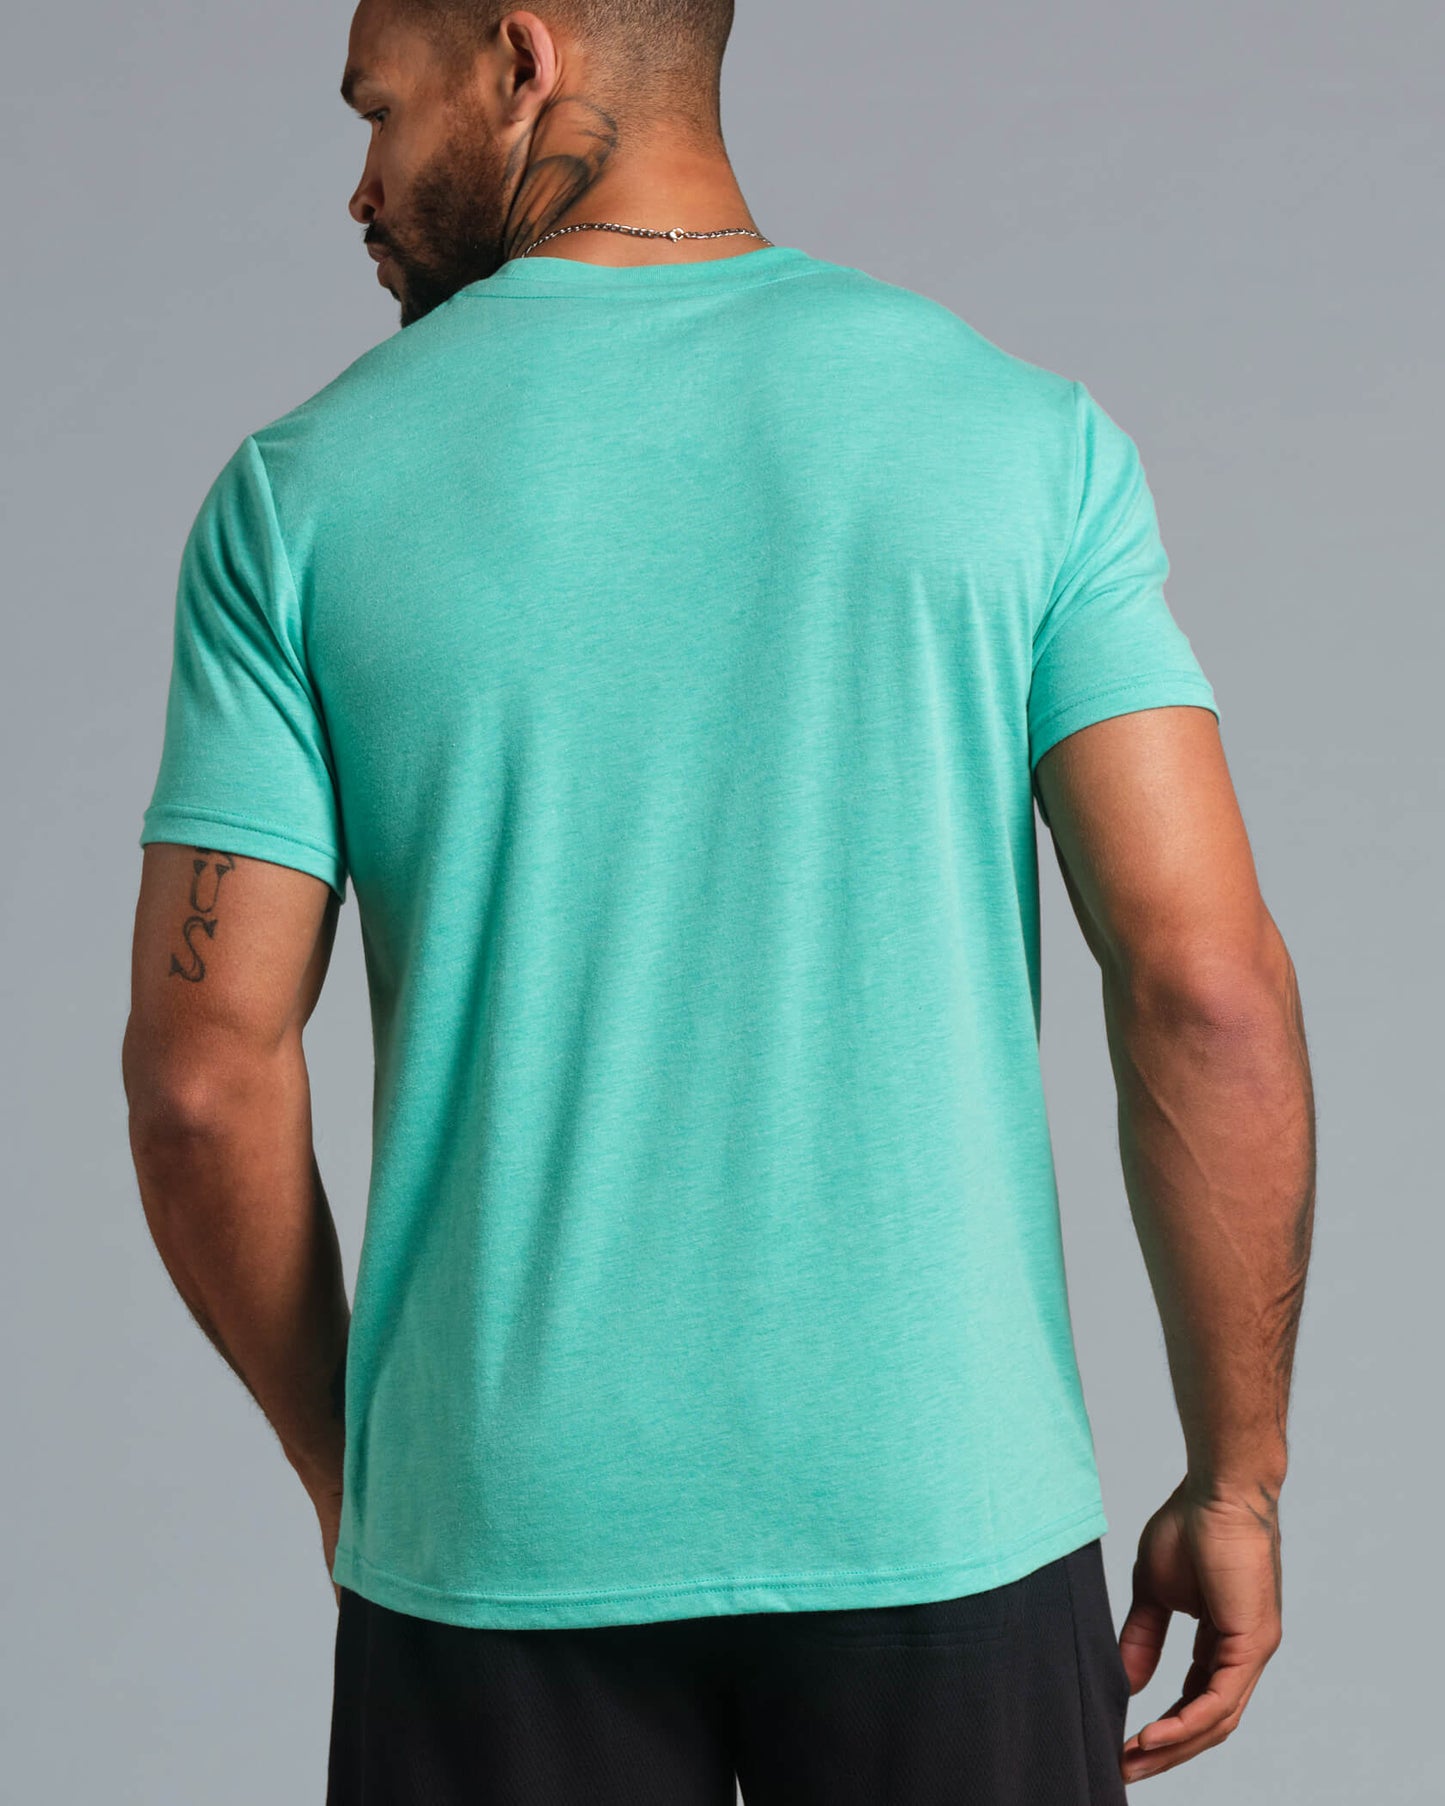 Origin SuperBlend T-Shirt |Aqua / Black| back